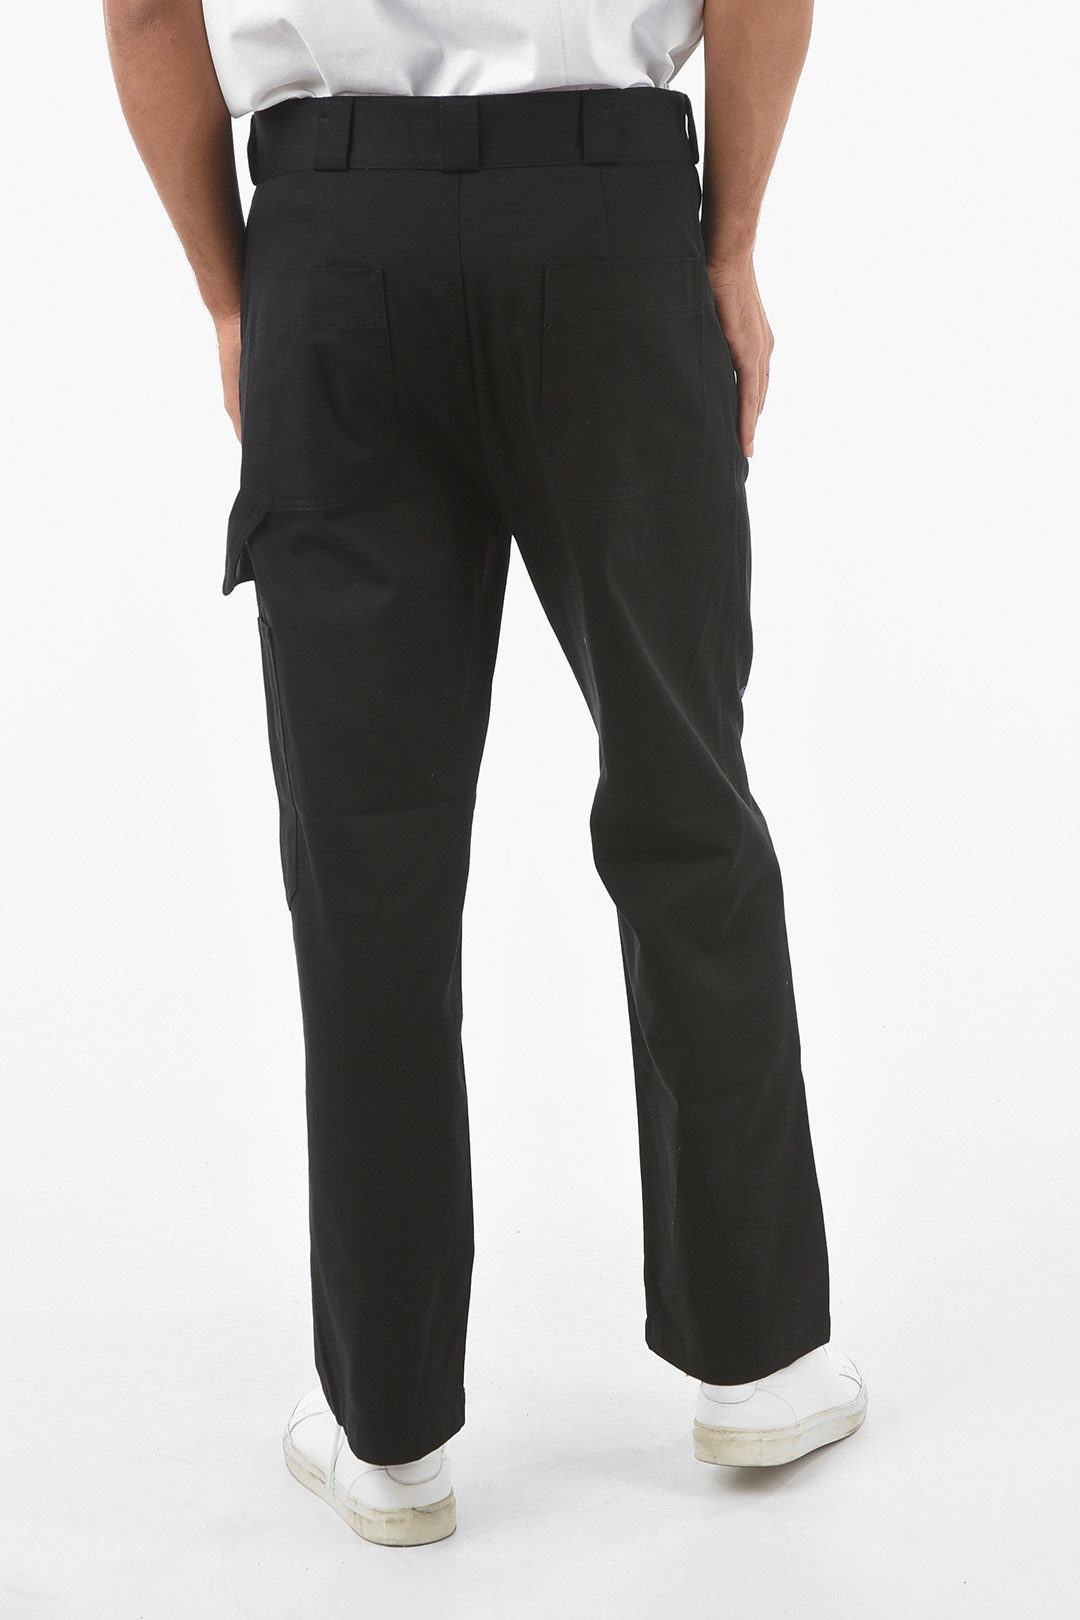 MSFTSrep Belt Loops 4 Pockets Baggy Pants men - Glamood Outlet